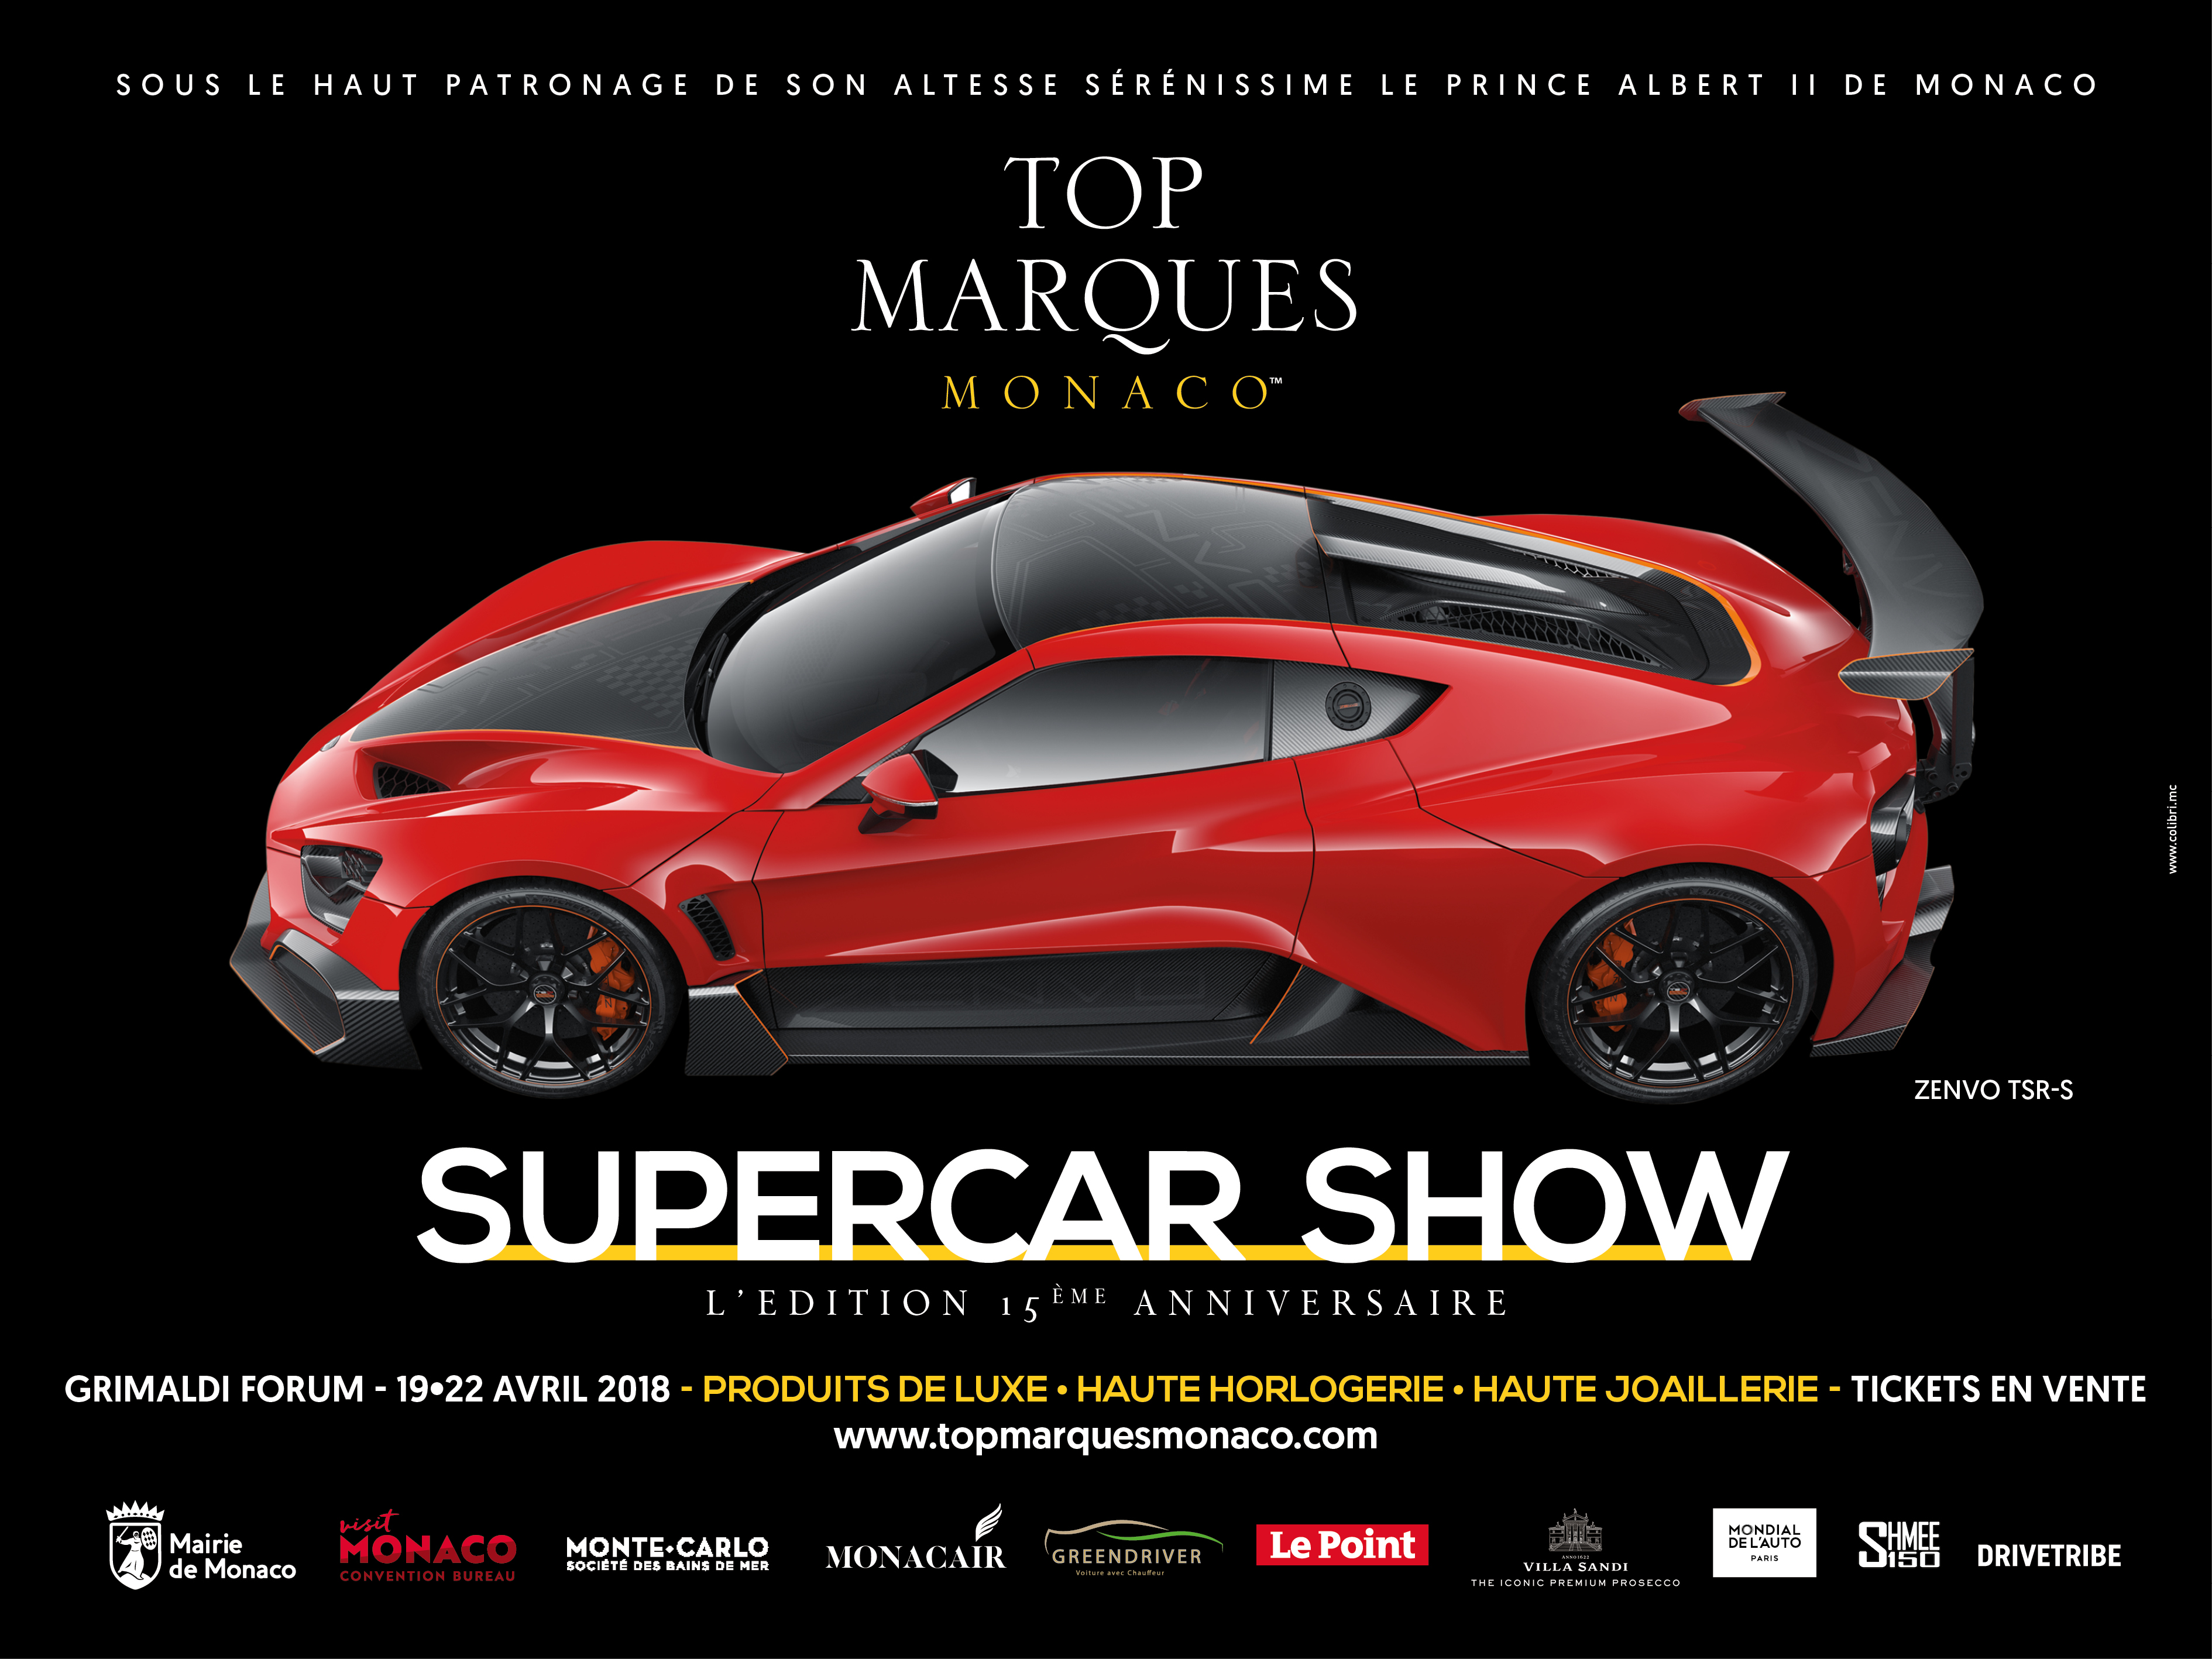 Top marques monaco - Top Marques - Agence Colibri, Design - Campagne d'affichage et communication évènementielle - 8